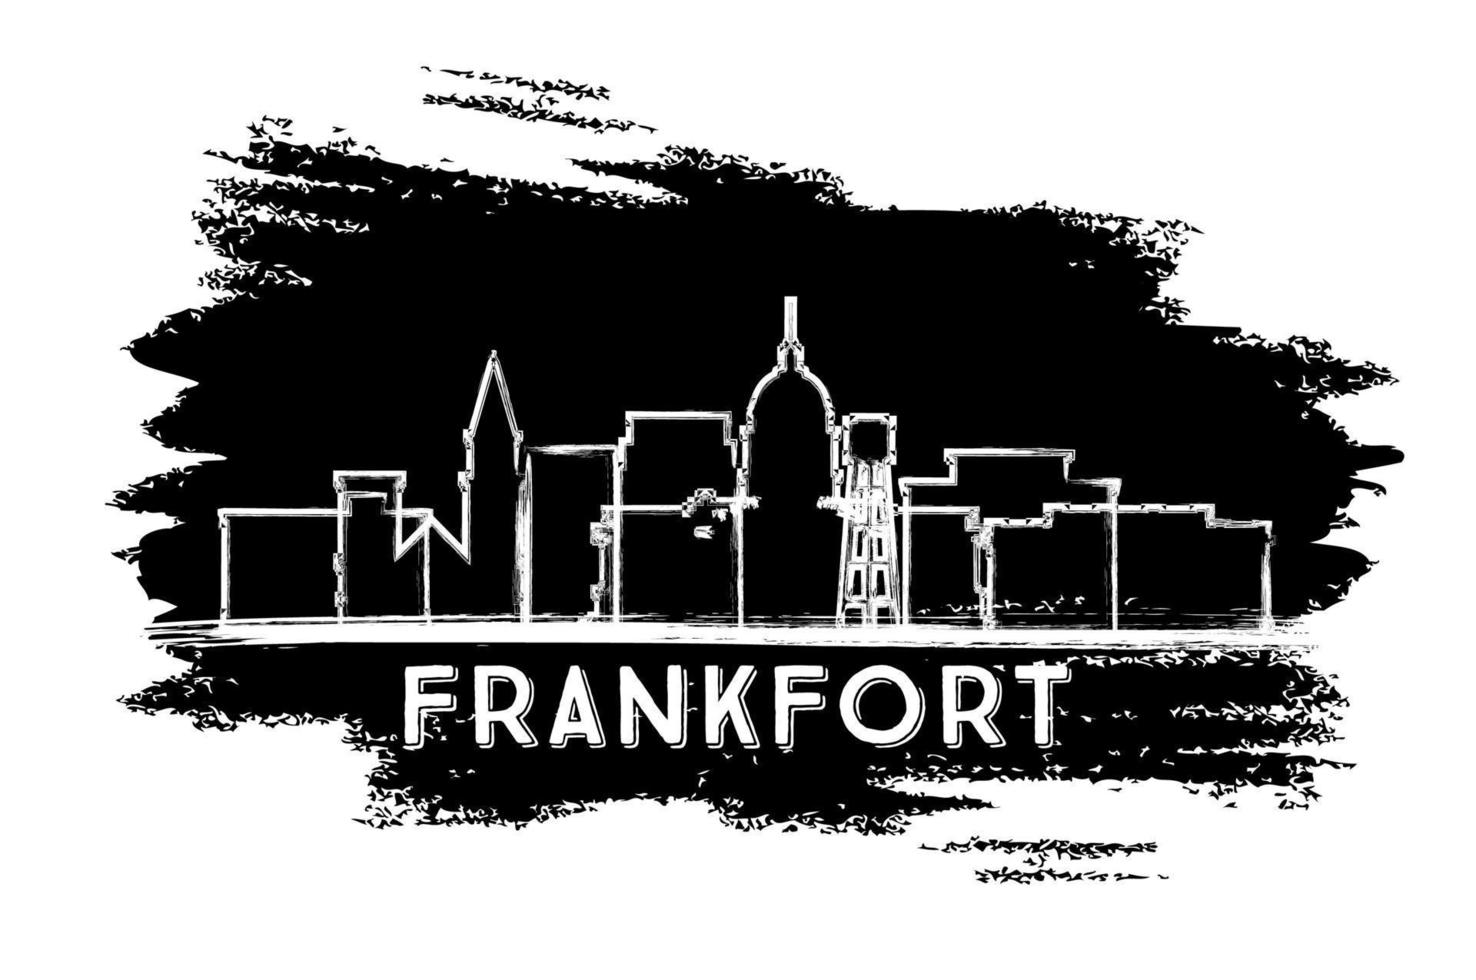 silueta del horizonte de la ciudad de frankfort kentucky usa. boceto dibujado a mano. vector